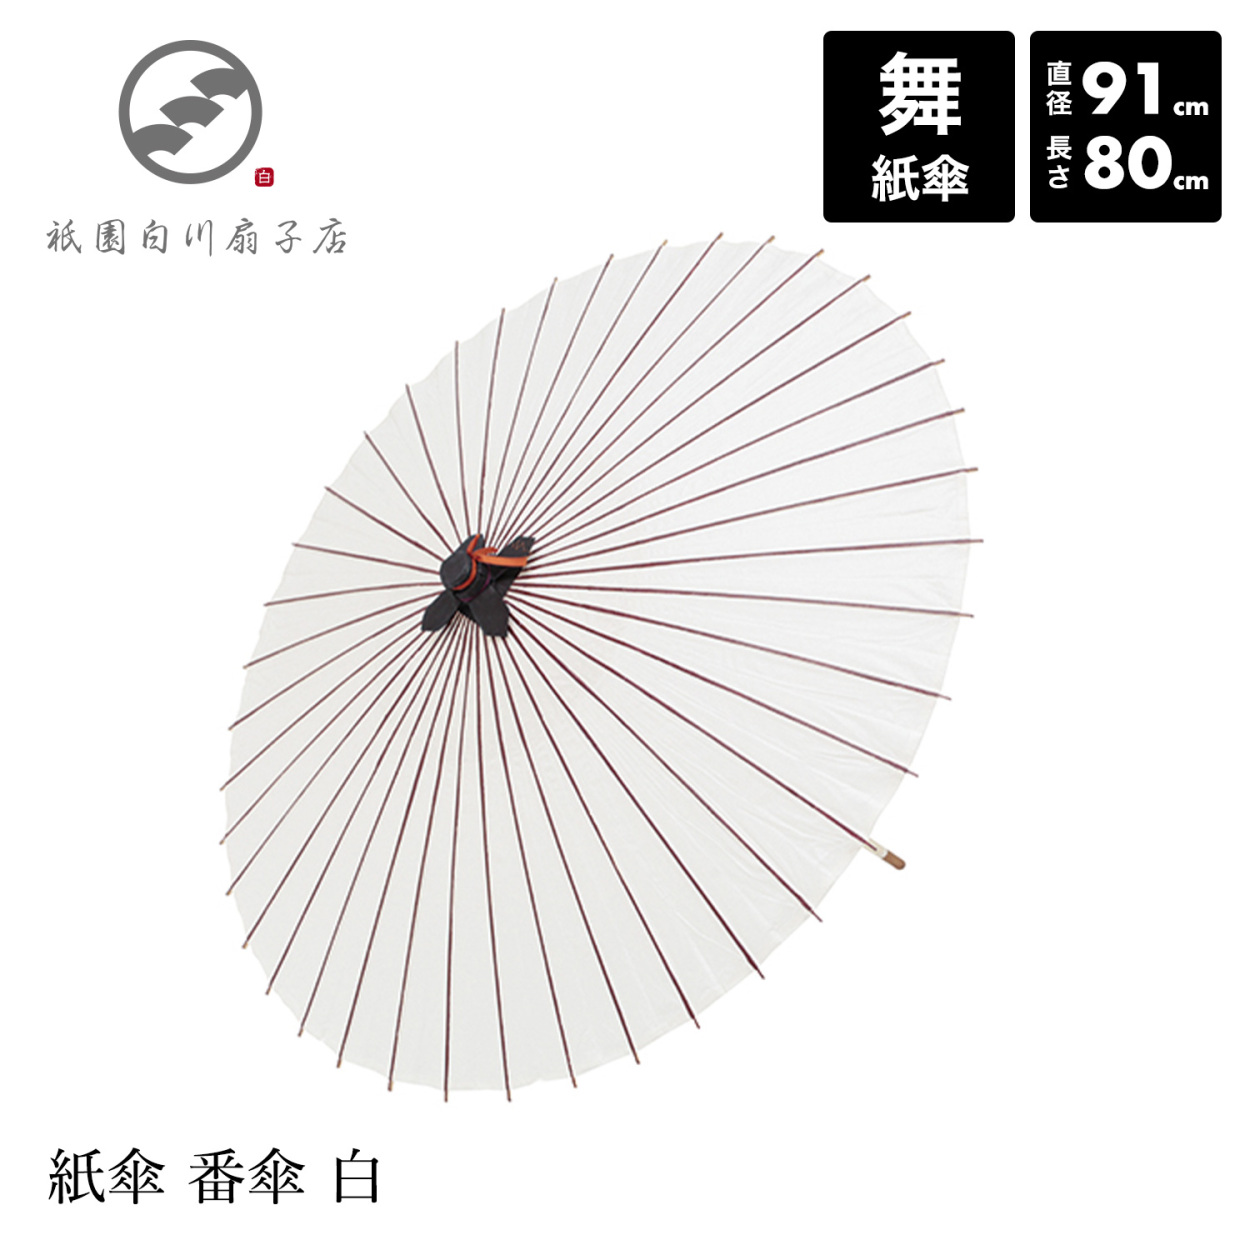 和傘 番傘 日本舞踊 踊り 着物 撮影 コスプレ 安い 「紙傘 和傘 番傘 白」